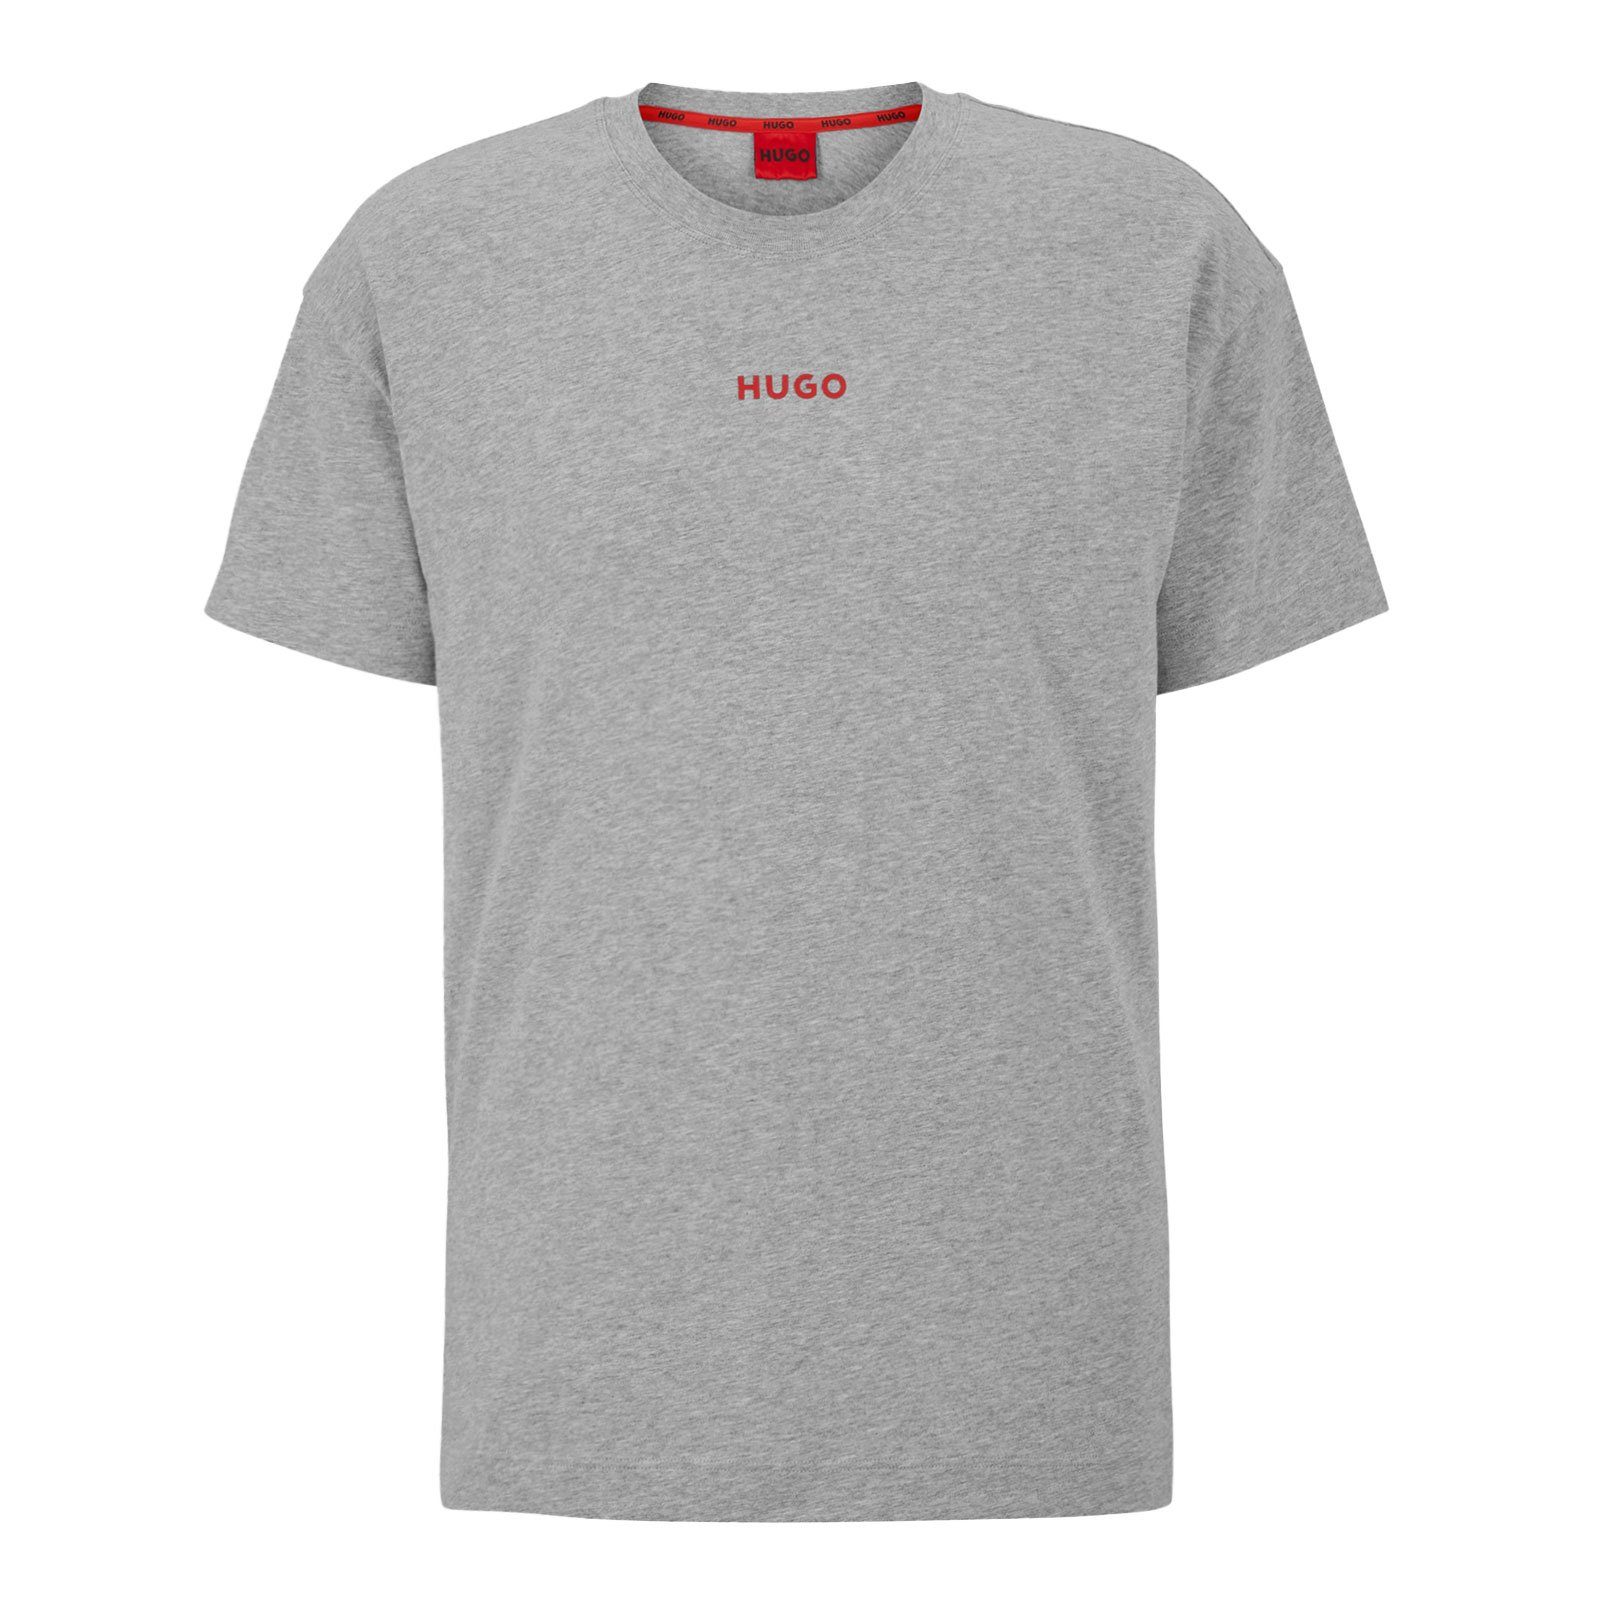 HUGO T-Shirt Linked mit Markenprint vorn 035 grey